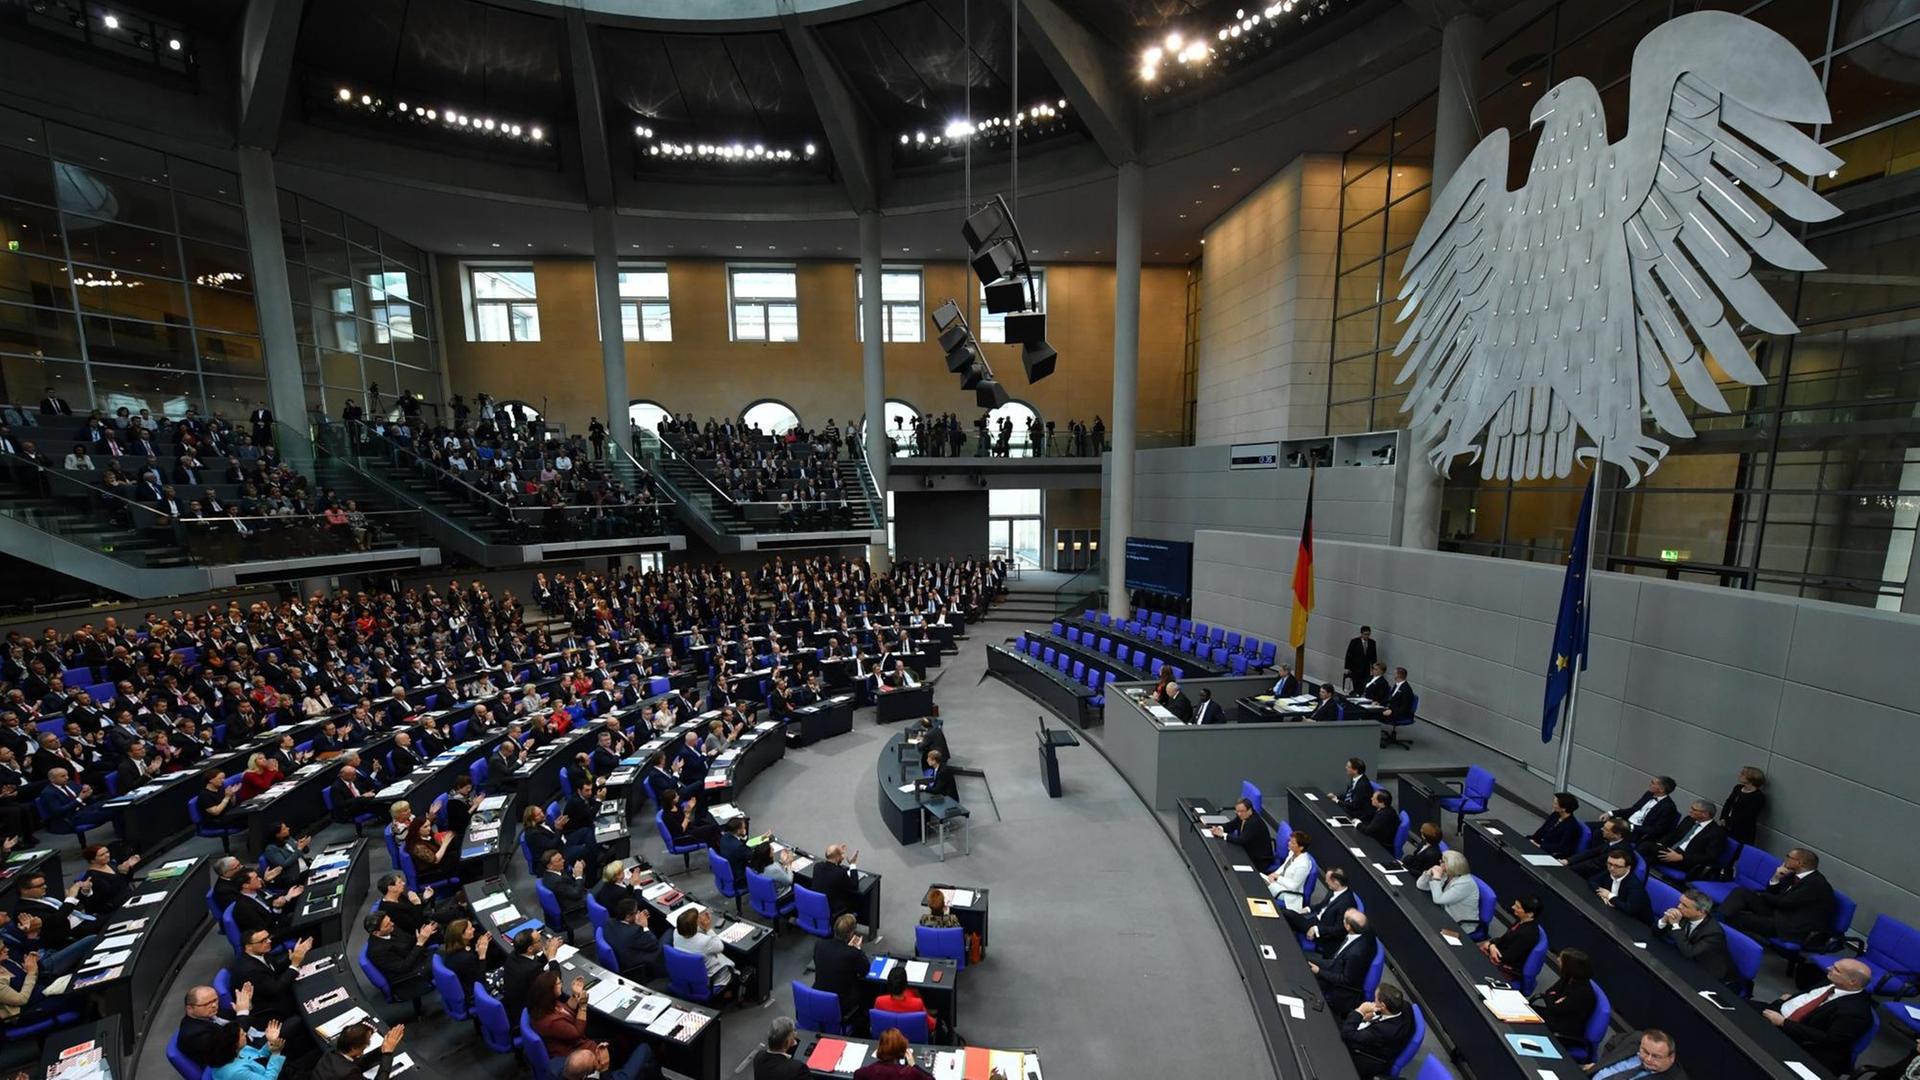 Die Abgeordneten hören bei der konstituierenden Sitzung des 19. Deutschen Bundestages am 24.10.2017 im Plenarsaal im Reichstagsgebäude in Berlin der ersten Rede von Wolfgang Schäuble als neugewählten Bundestagspräsident zu.